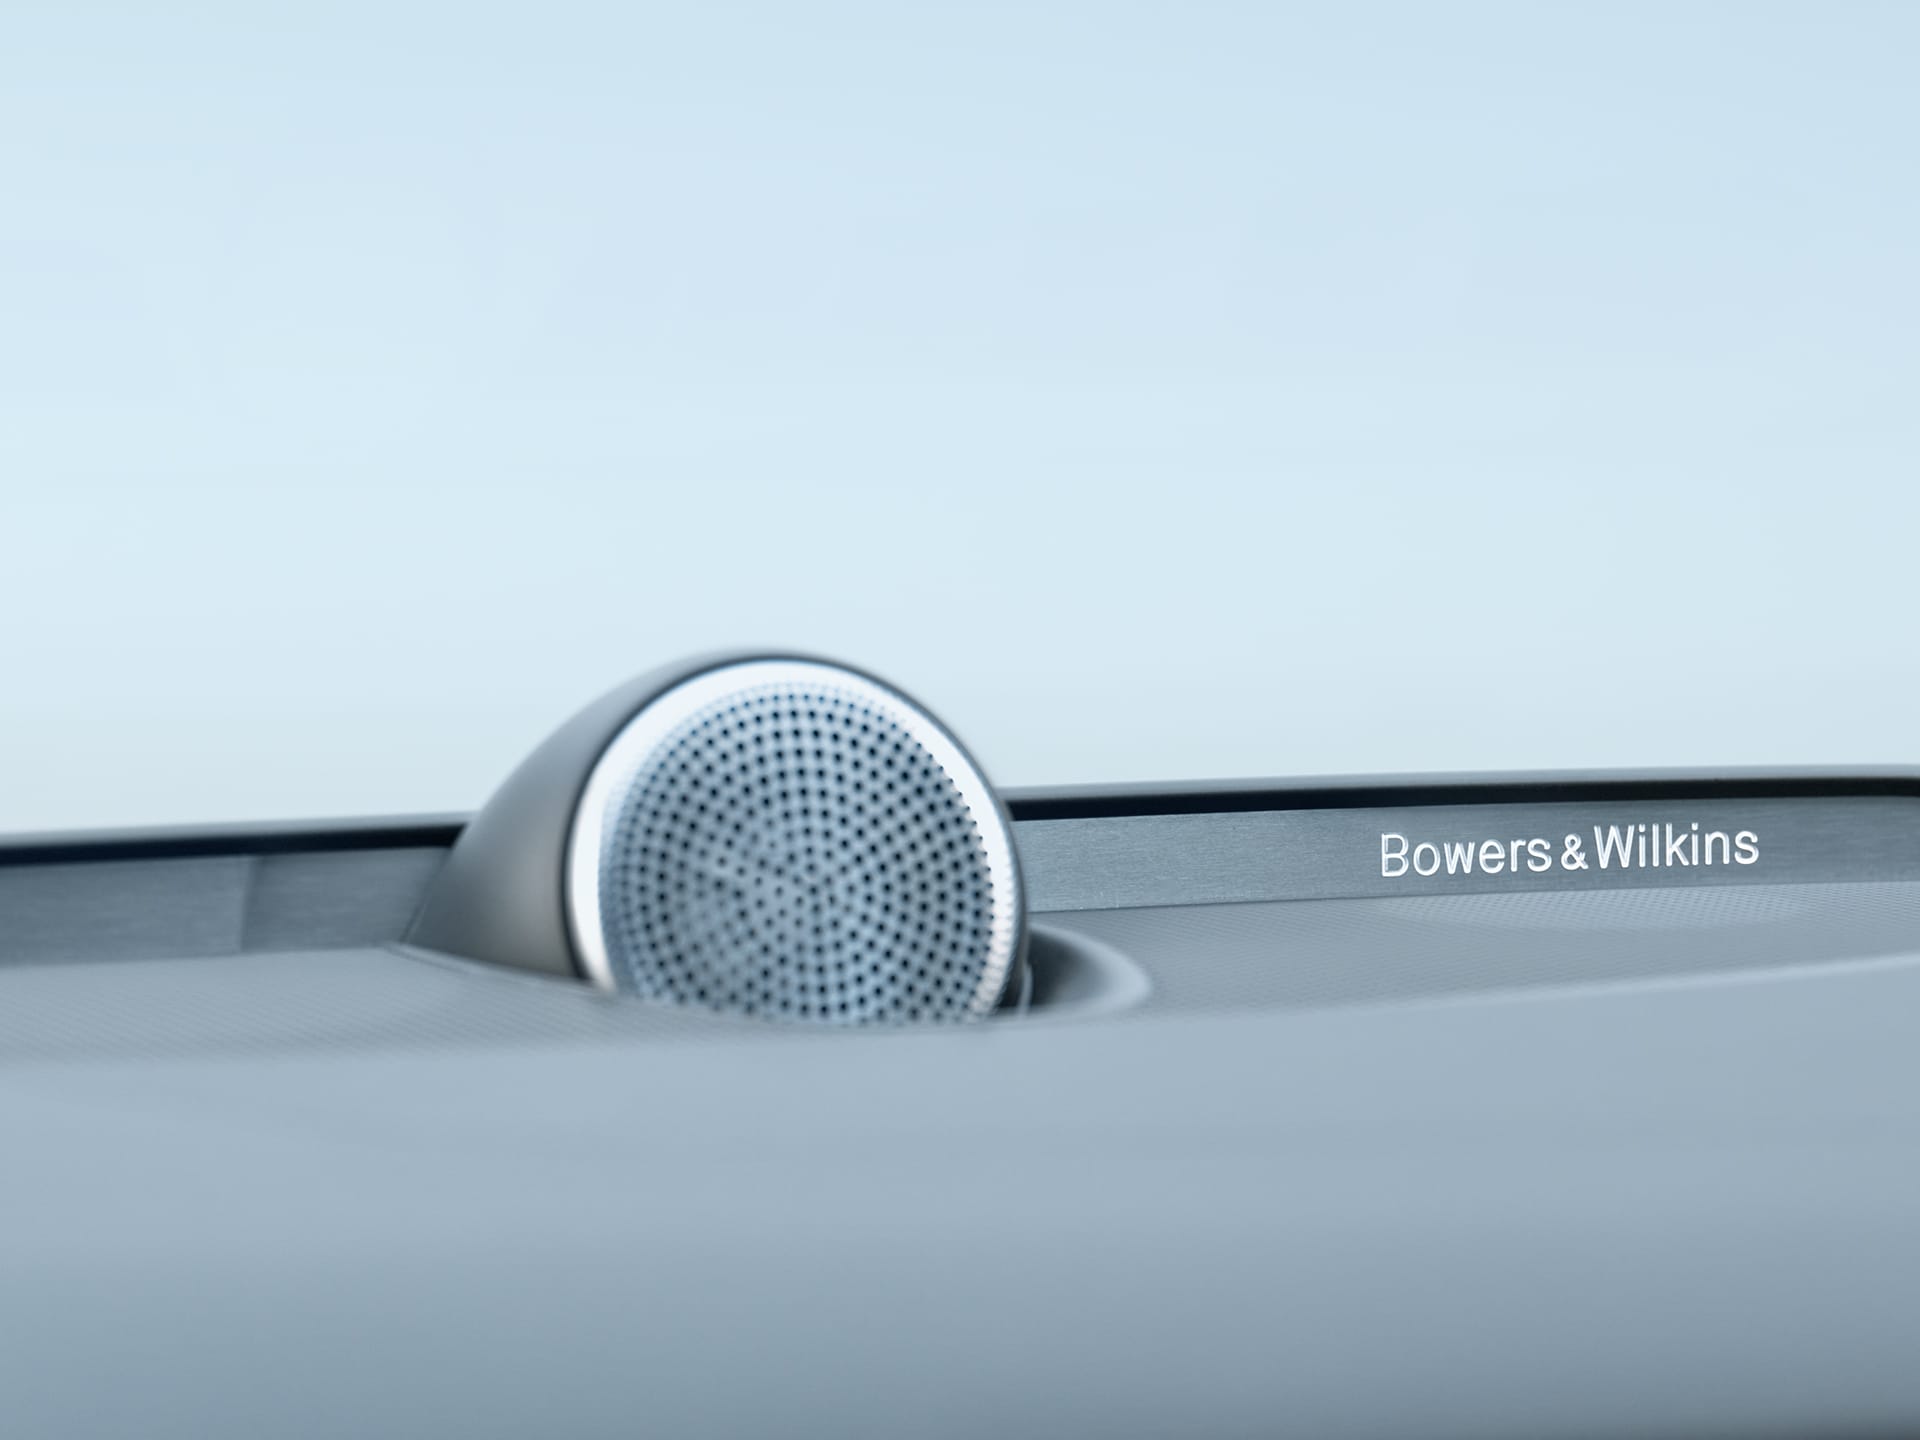 Bowers & Wilkins speakers inside a Volvo S60 sedan.